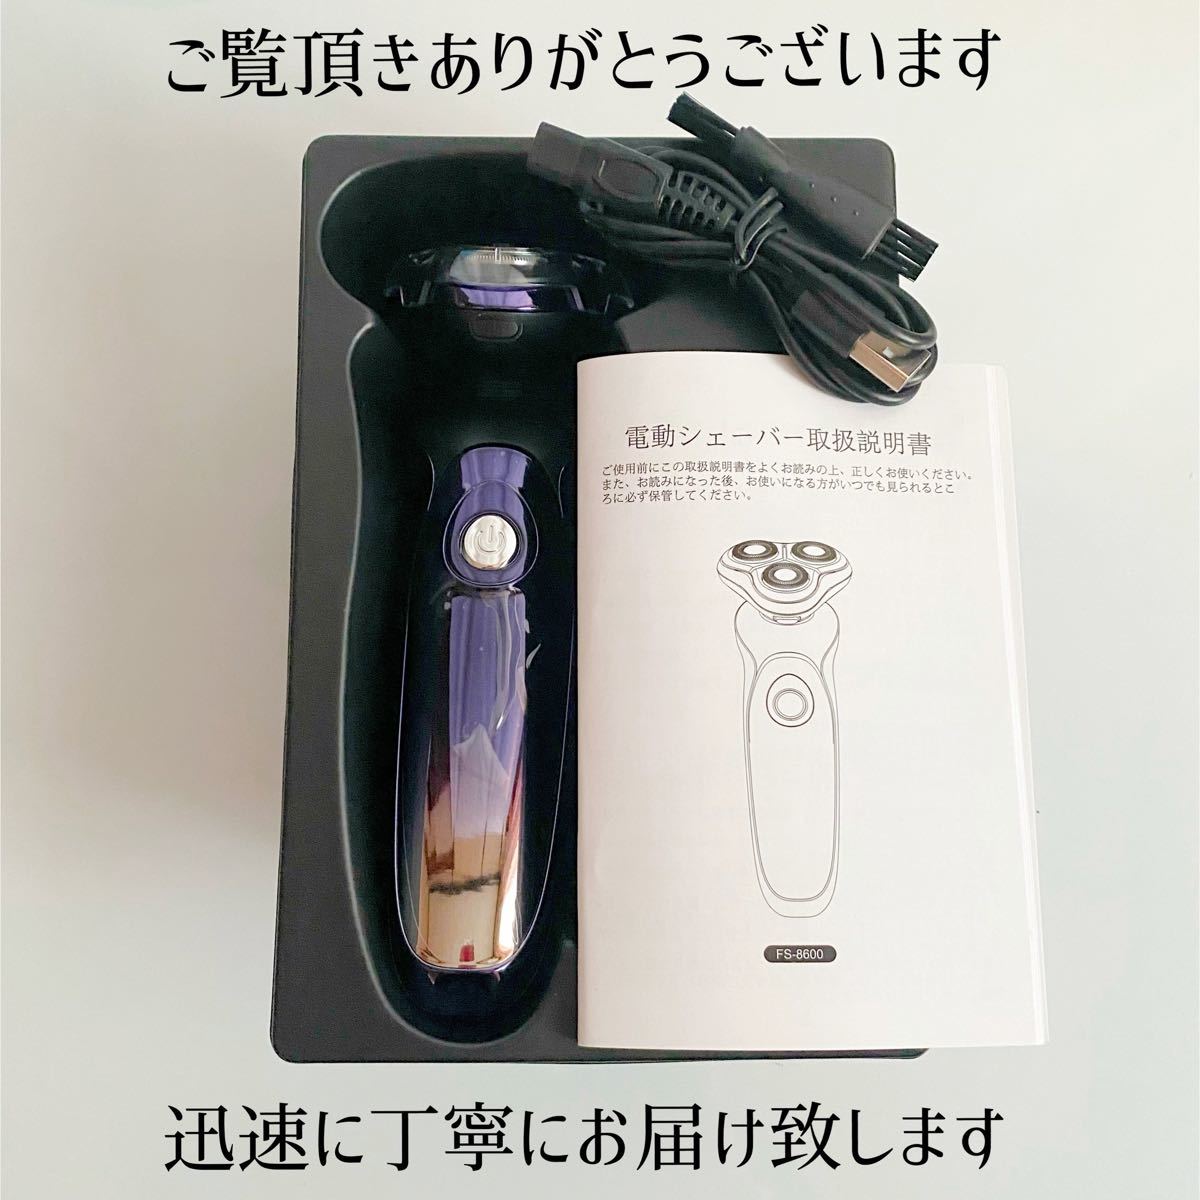 【新品】メンズ電気シェーバー ひげそり 回転式 防水 水洗いUSB充電式 LED